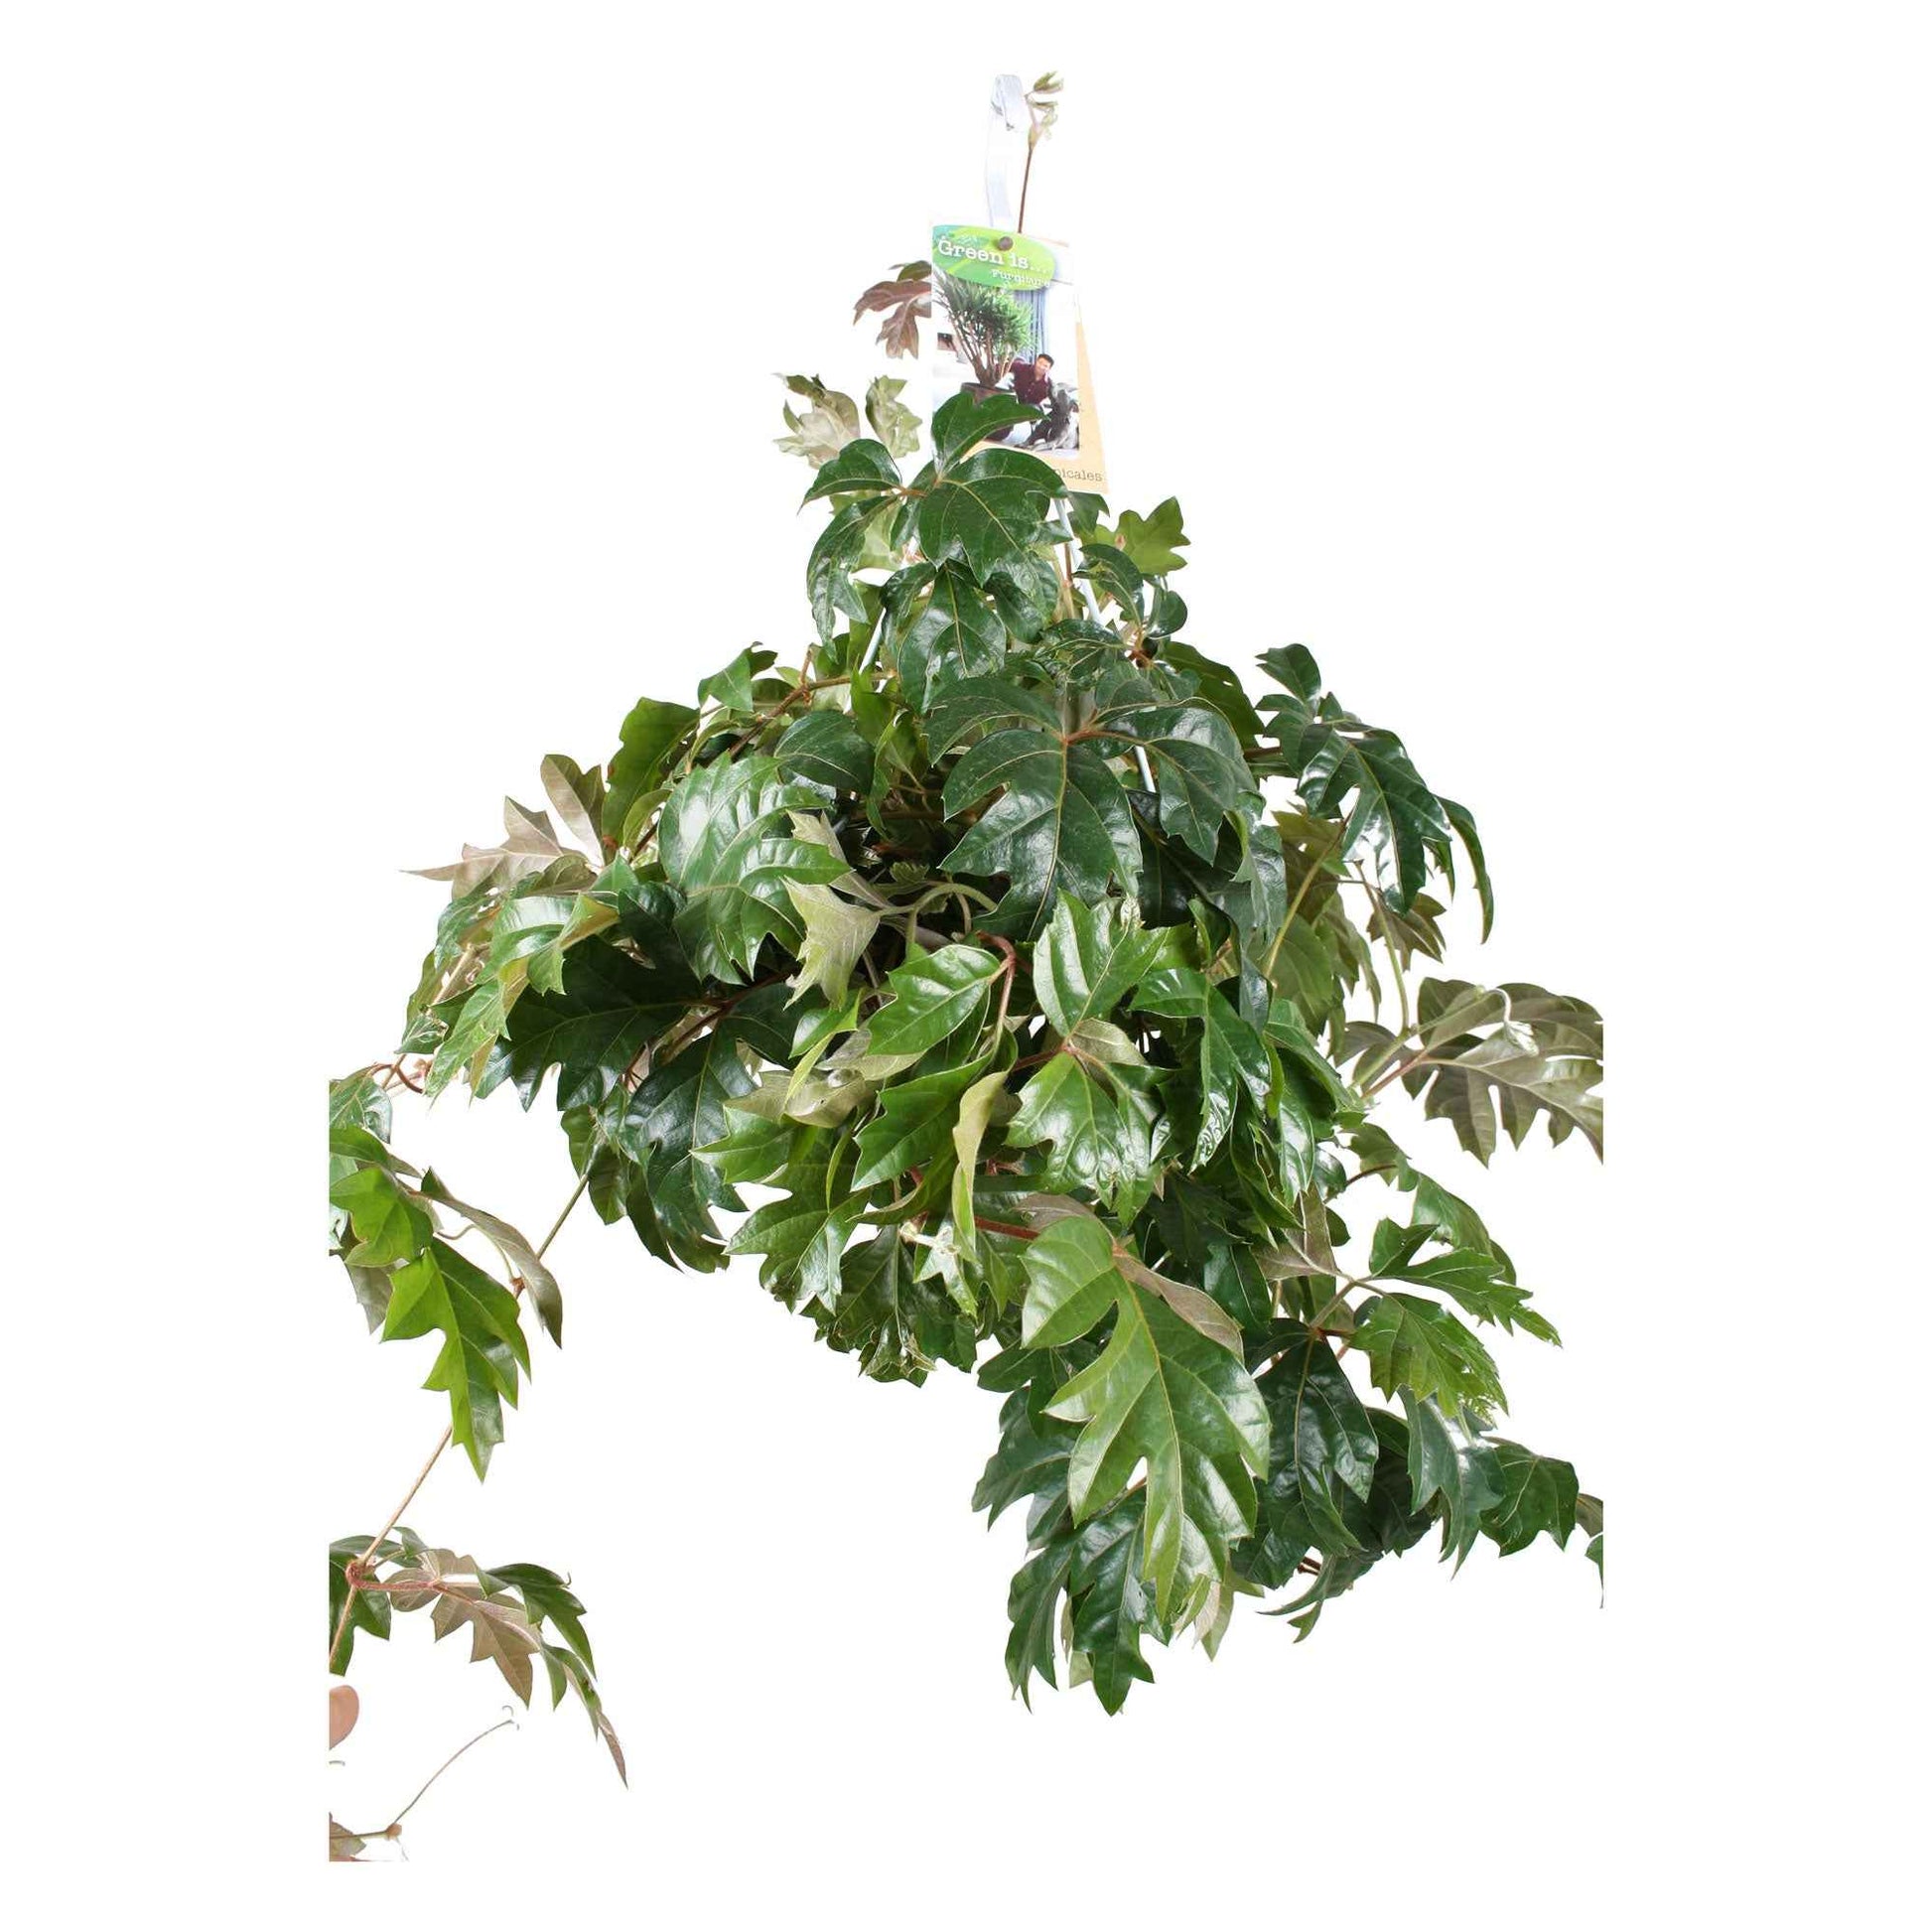 Koningswingerd 'Ellen Danica' - Cissus ellen danica - Groene kamerplanten